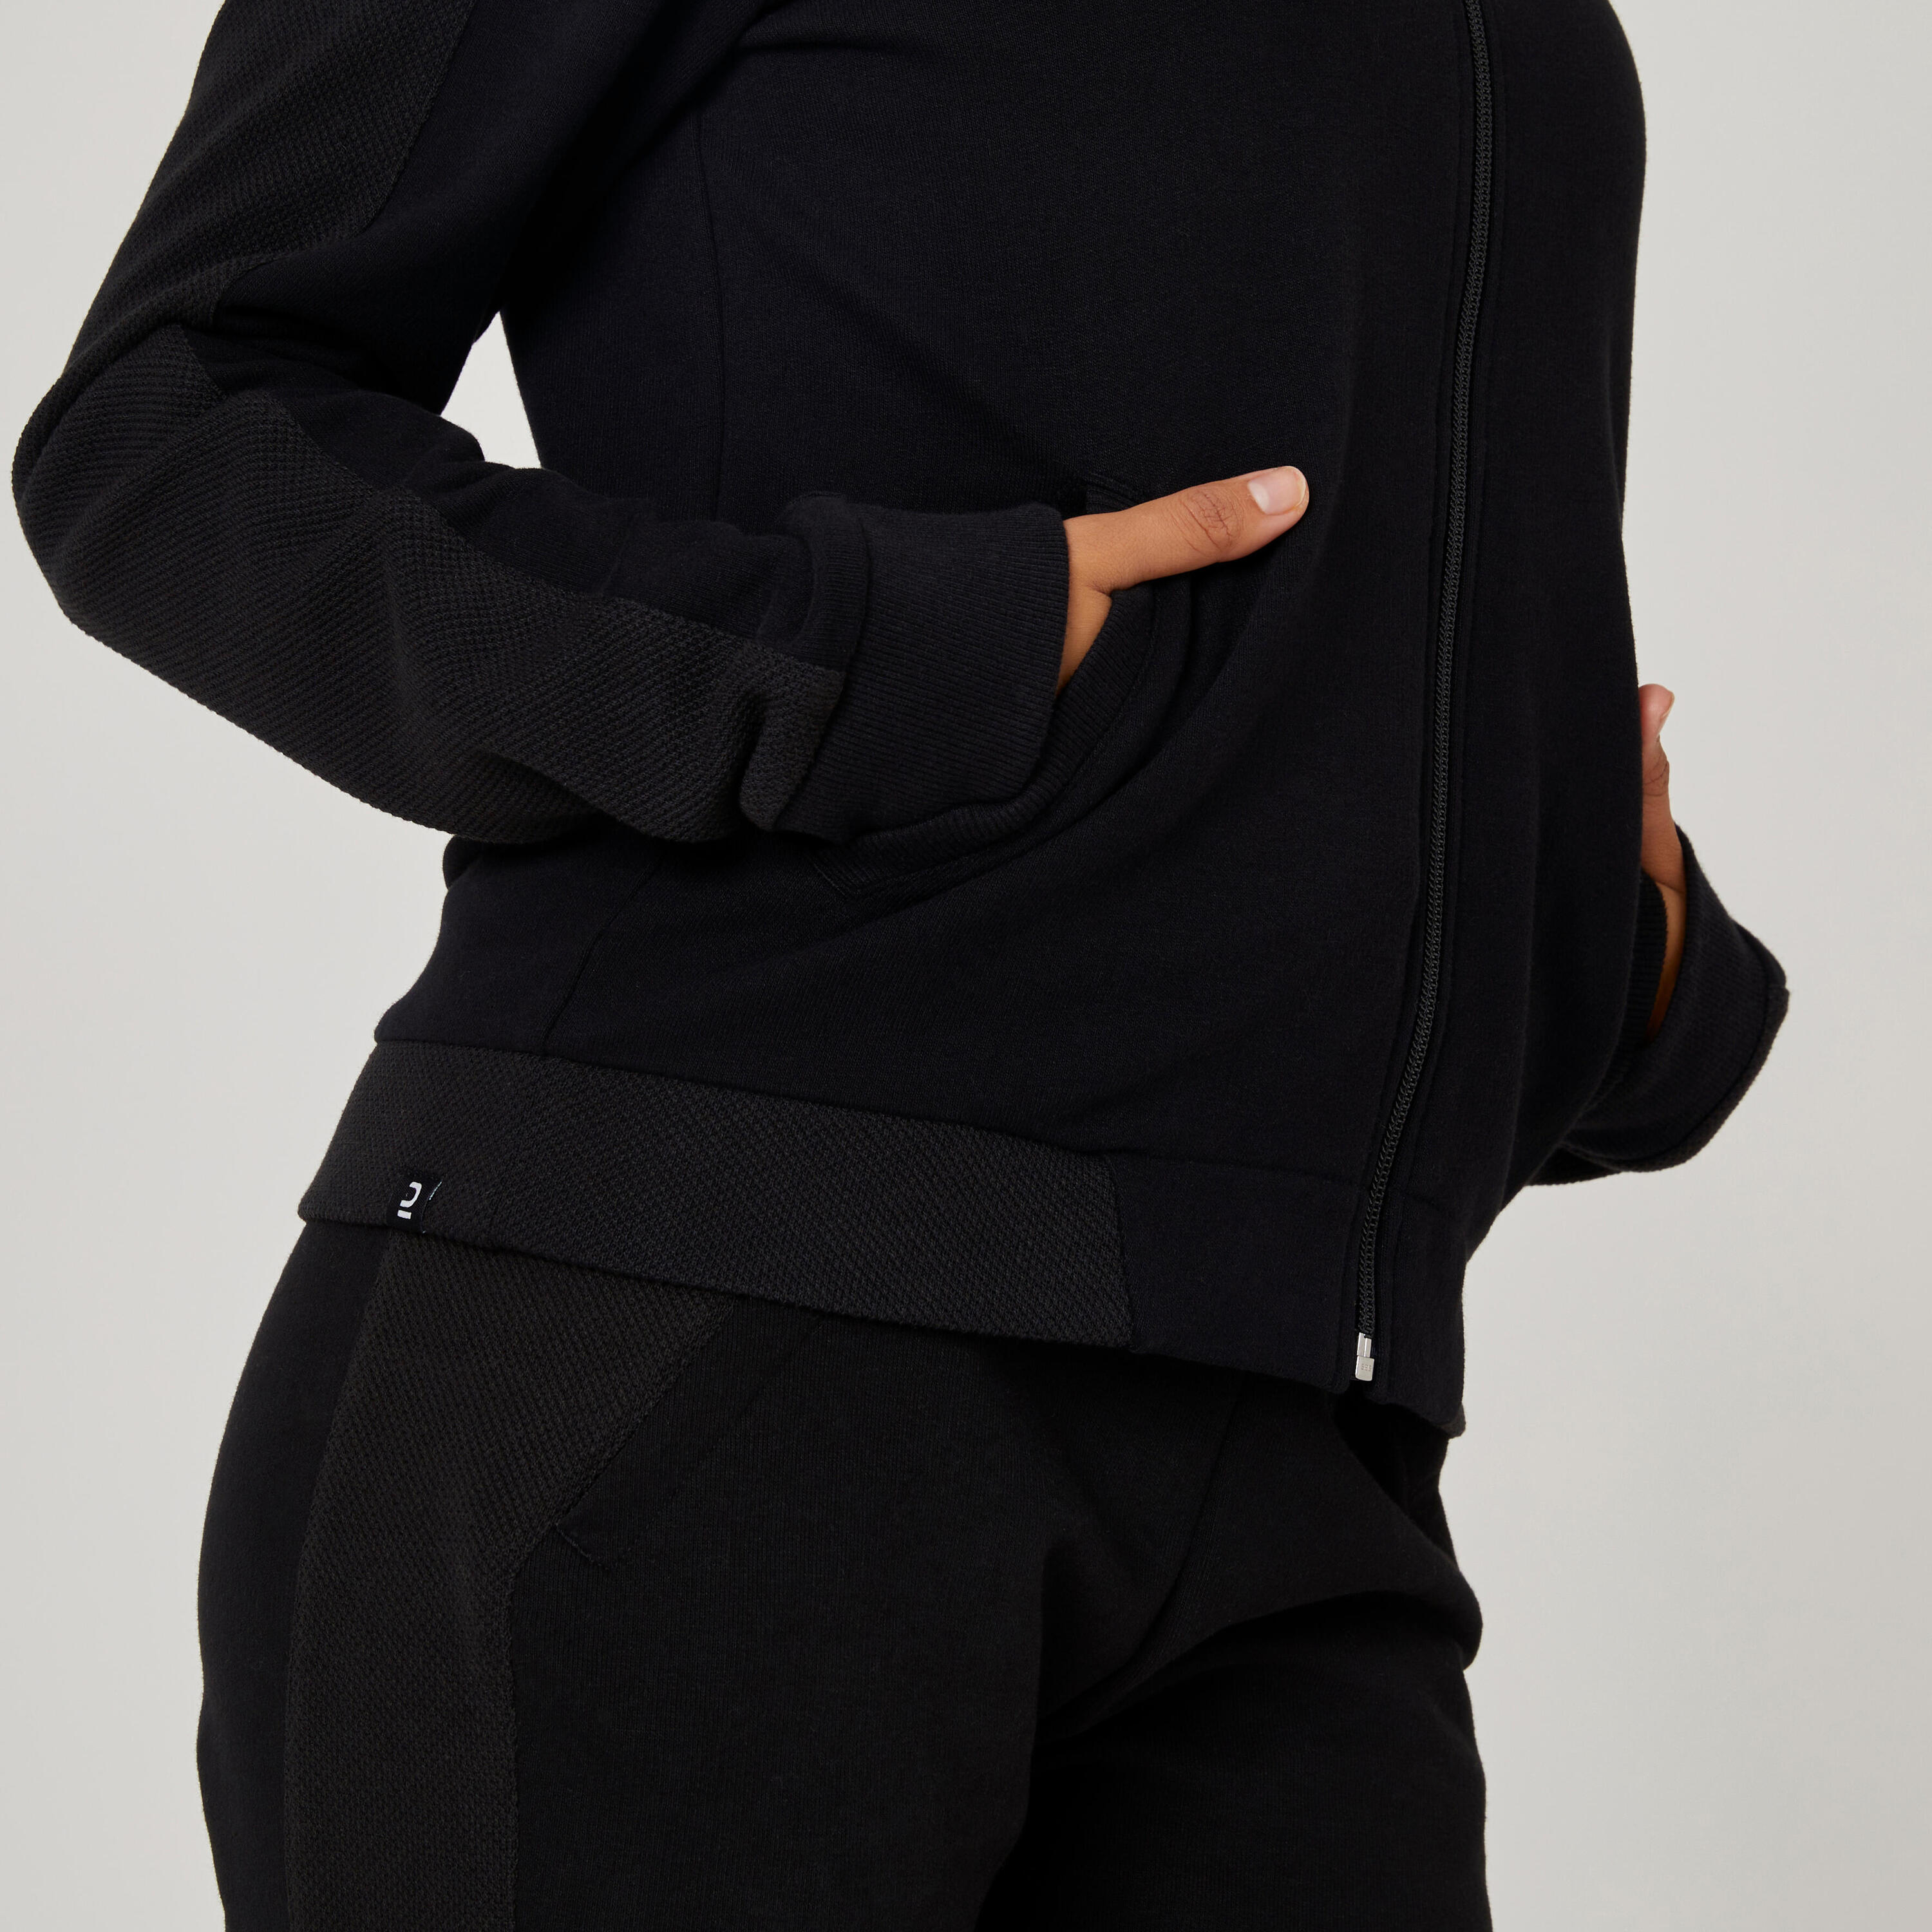 Women's Zip-Up Fitness Sweatshirt 520 - Black 5/5